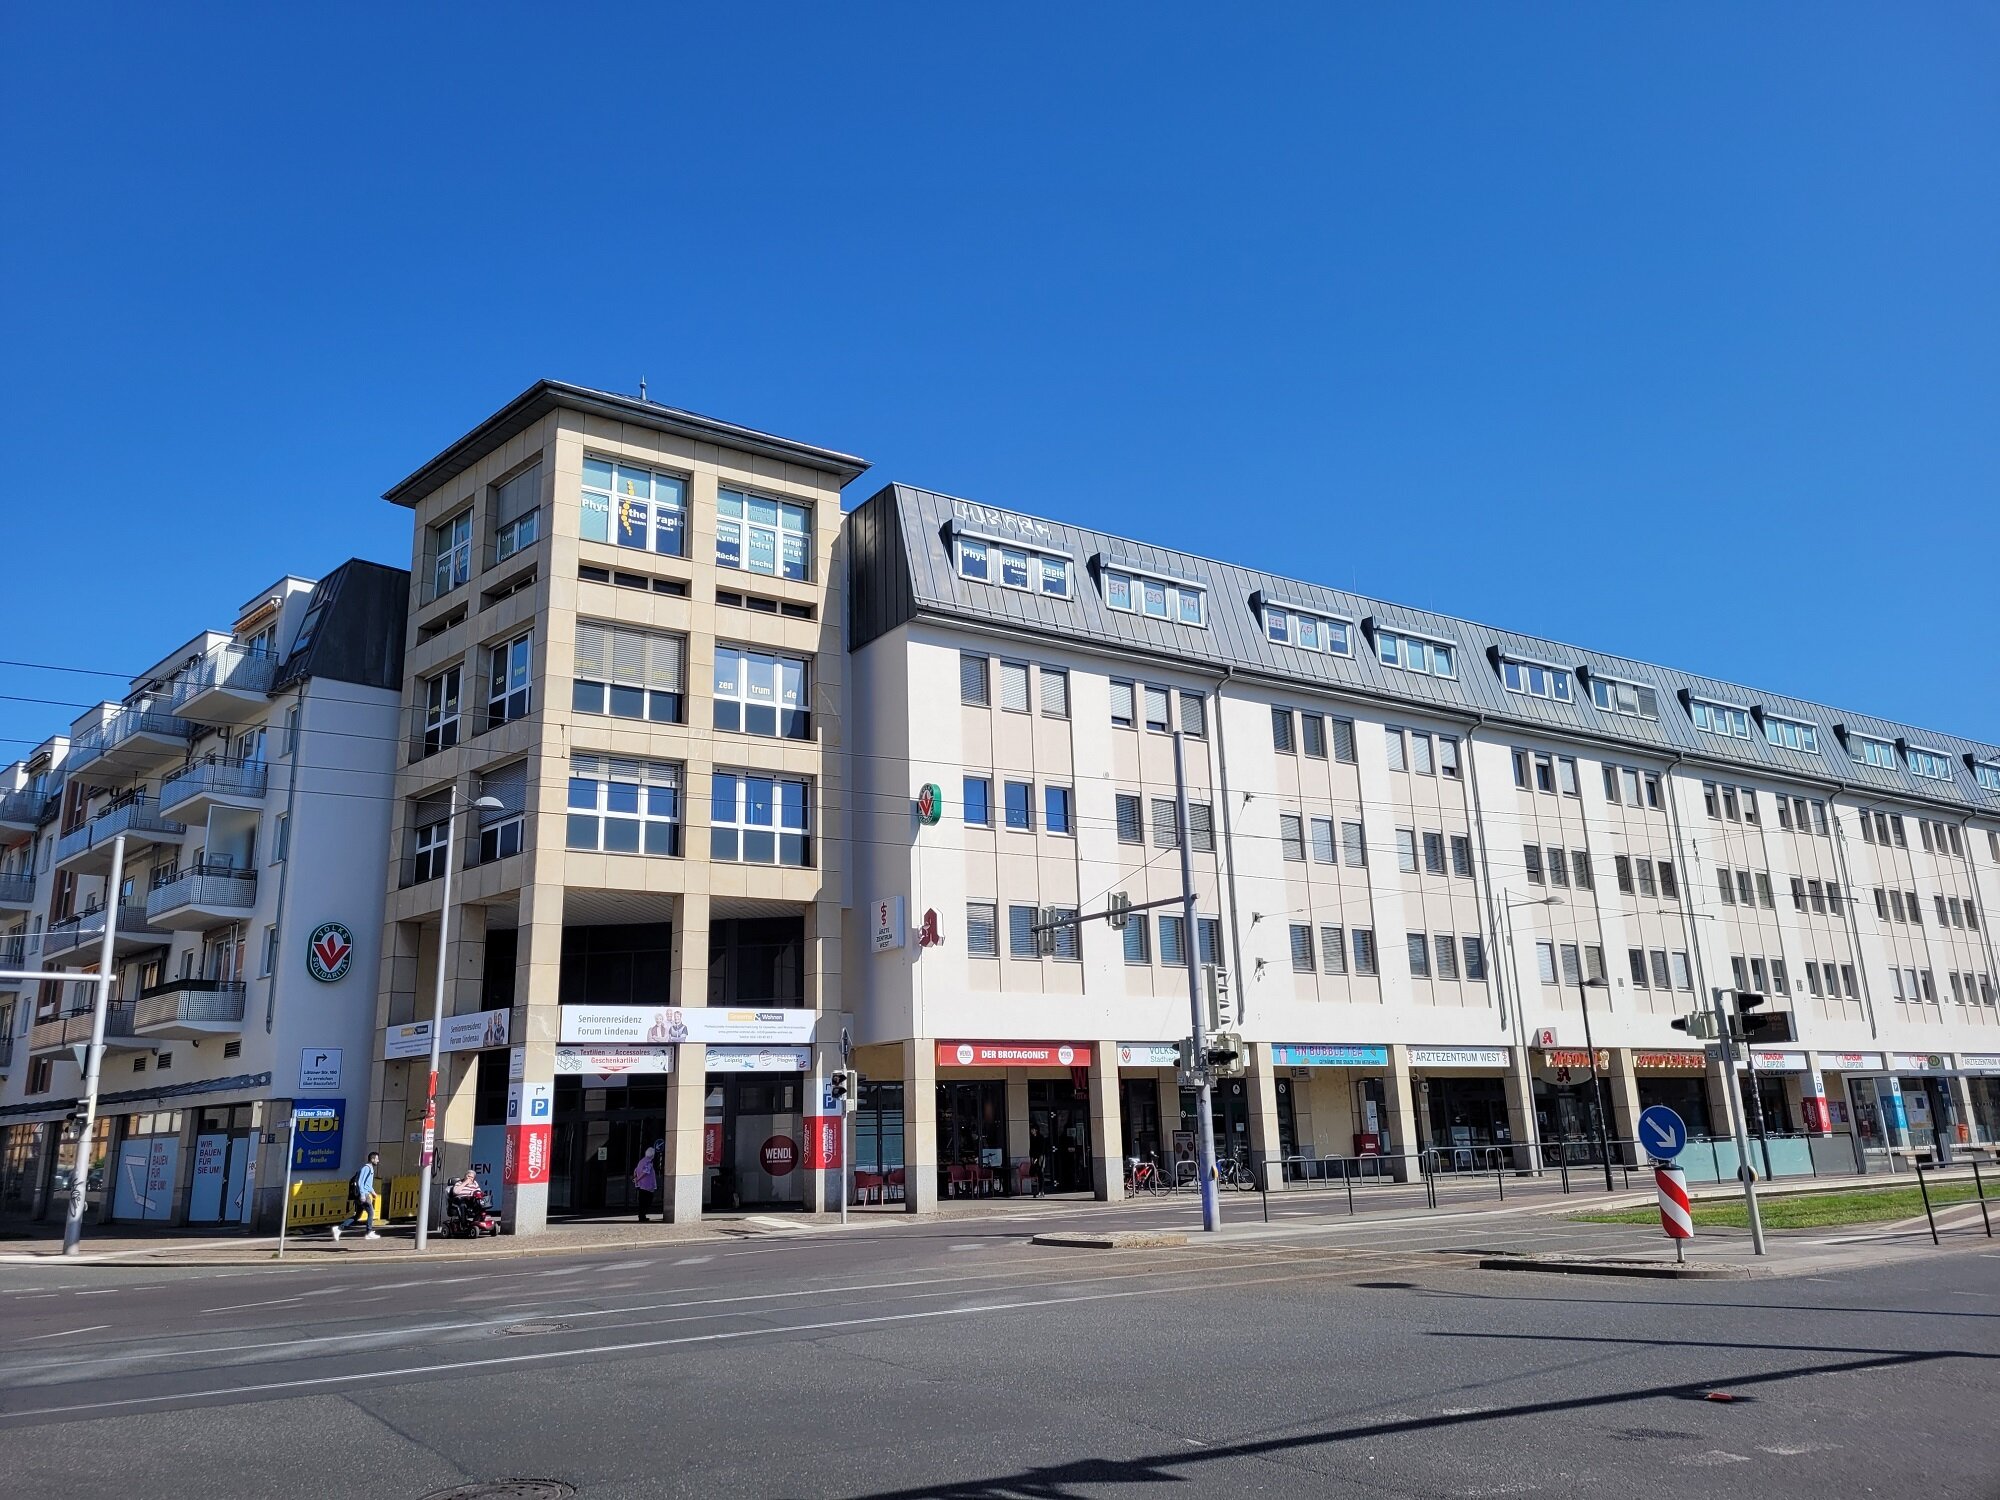 Laden zur Miete Provisionsfrei 10 € 201 m² Verkaufsfläche Neulindenau Leipzig 04179